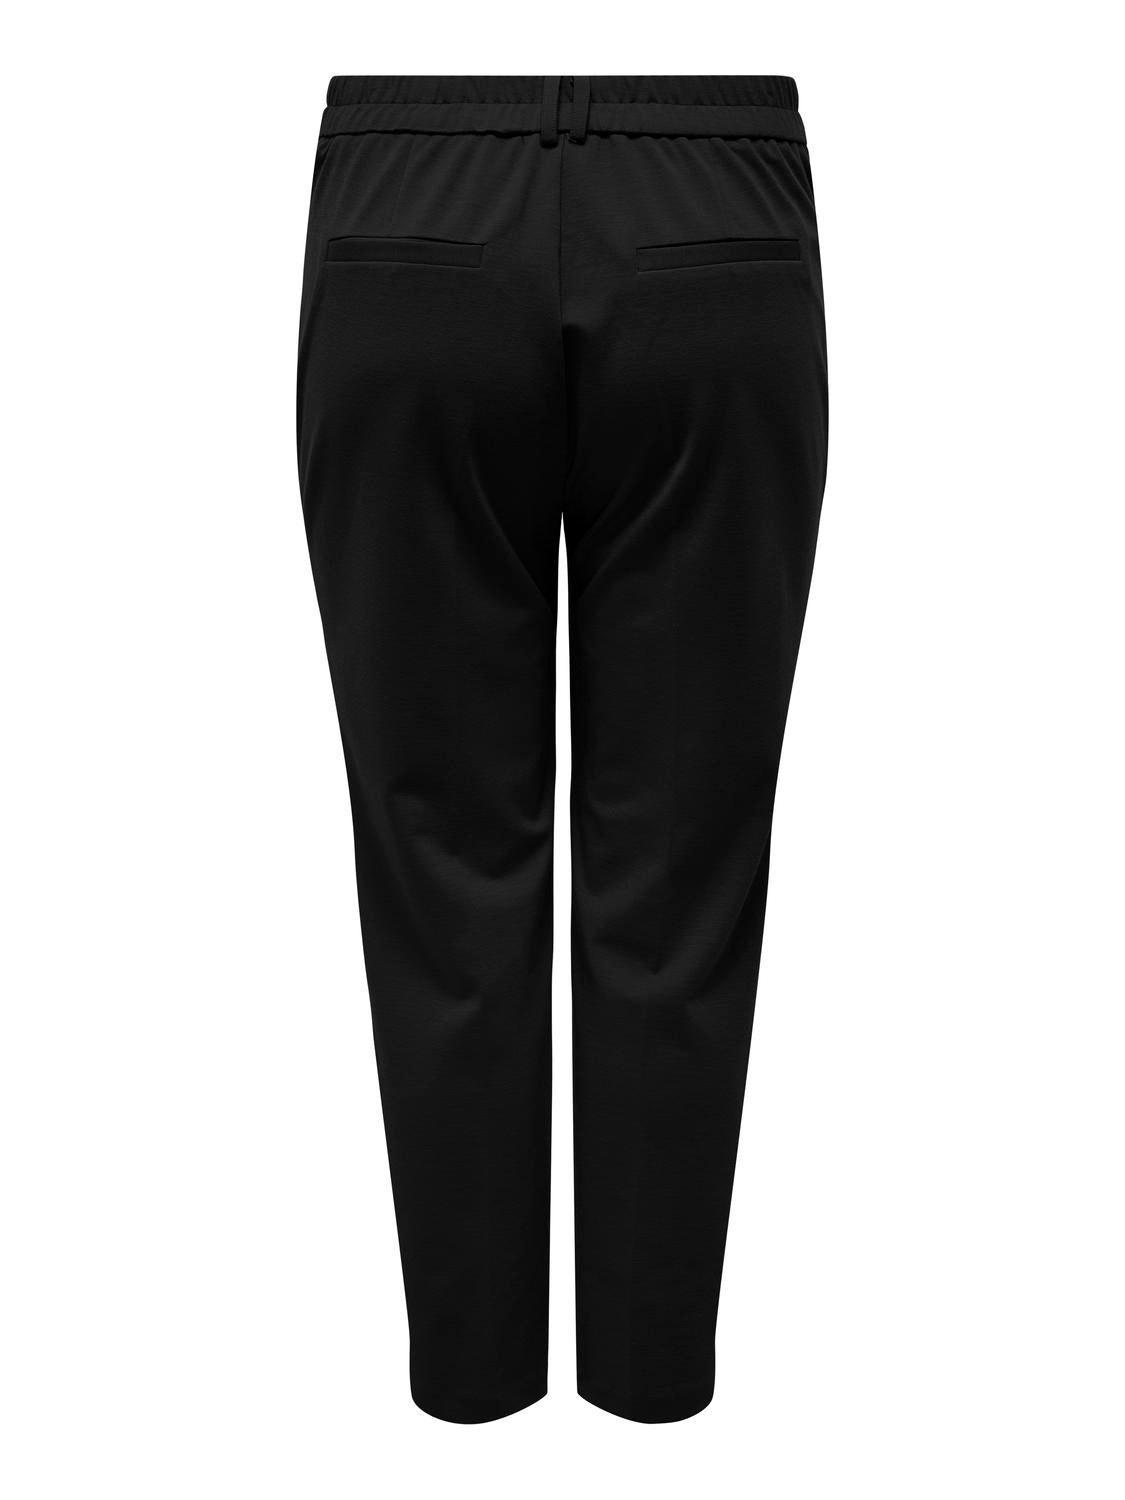 ONLY Curvy high waist trousersCurvy high waist trousers -Black - 15312306